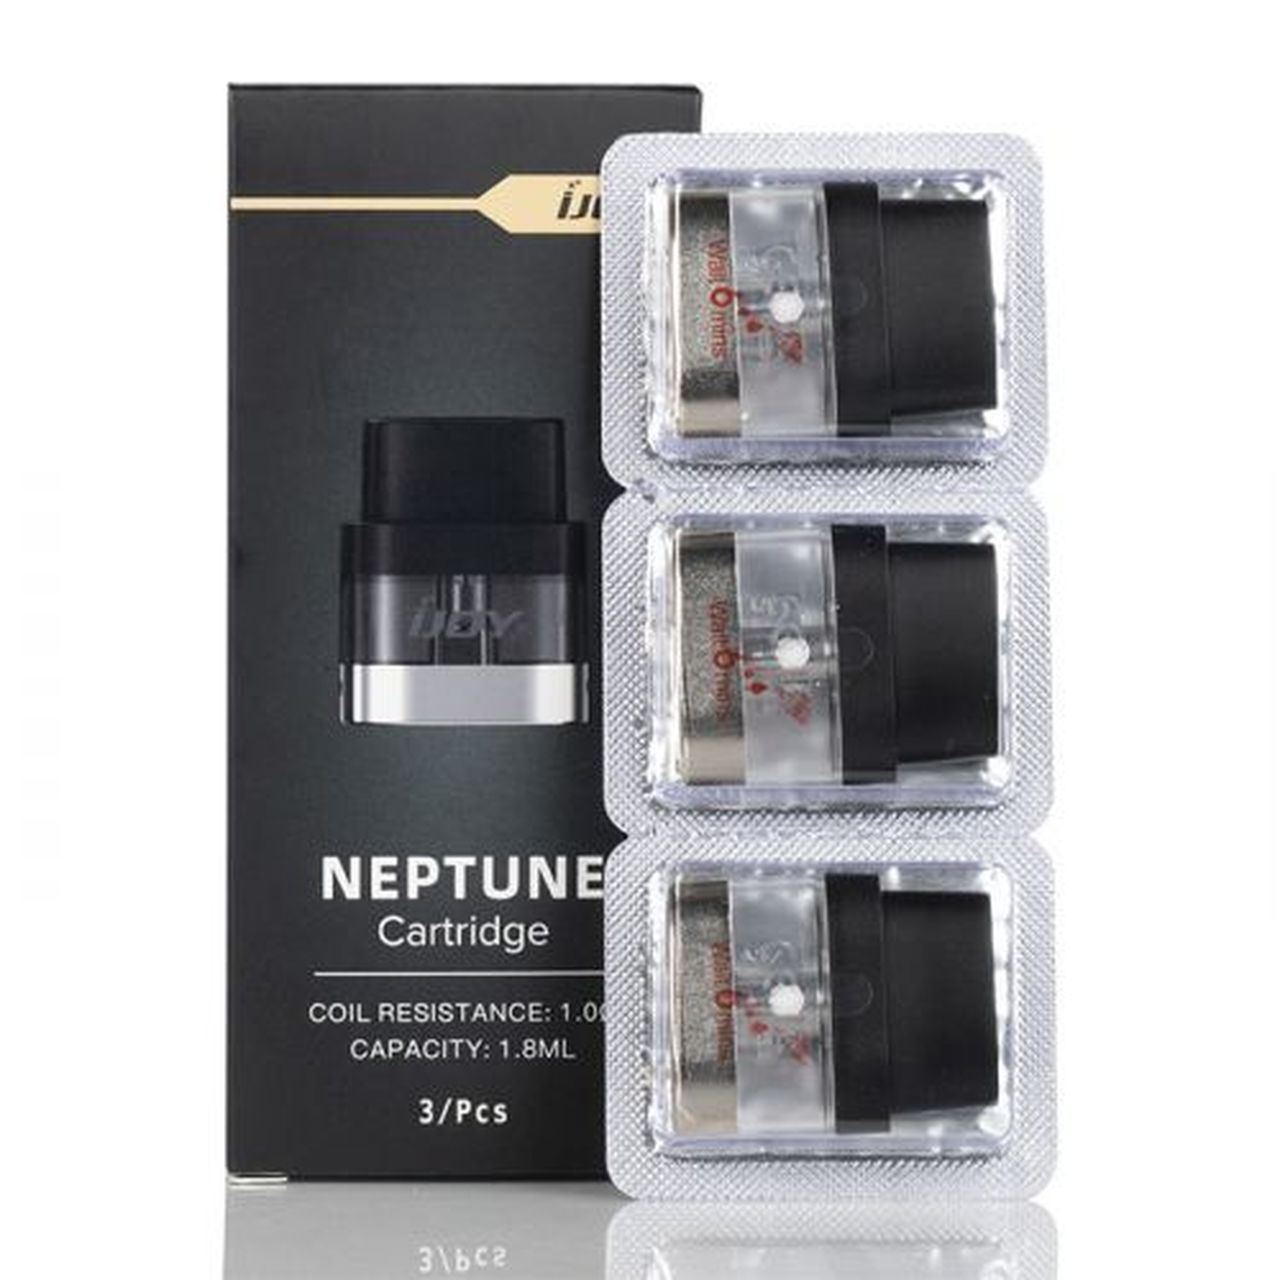 iJoy Neptune and Neptune X empty pod cartridges